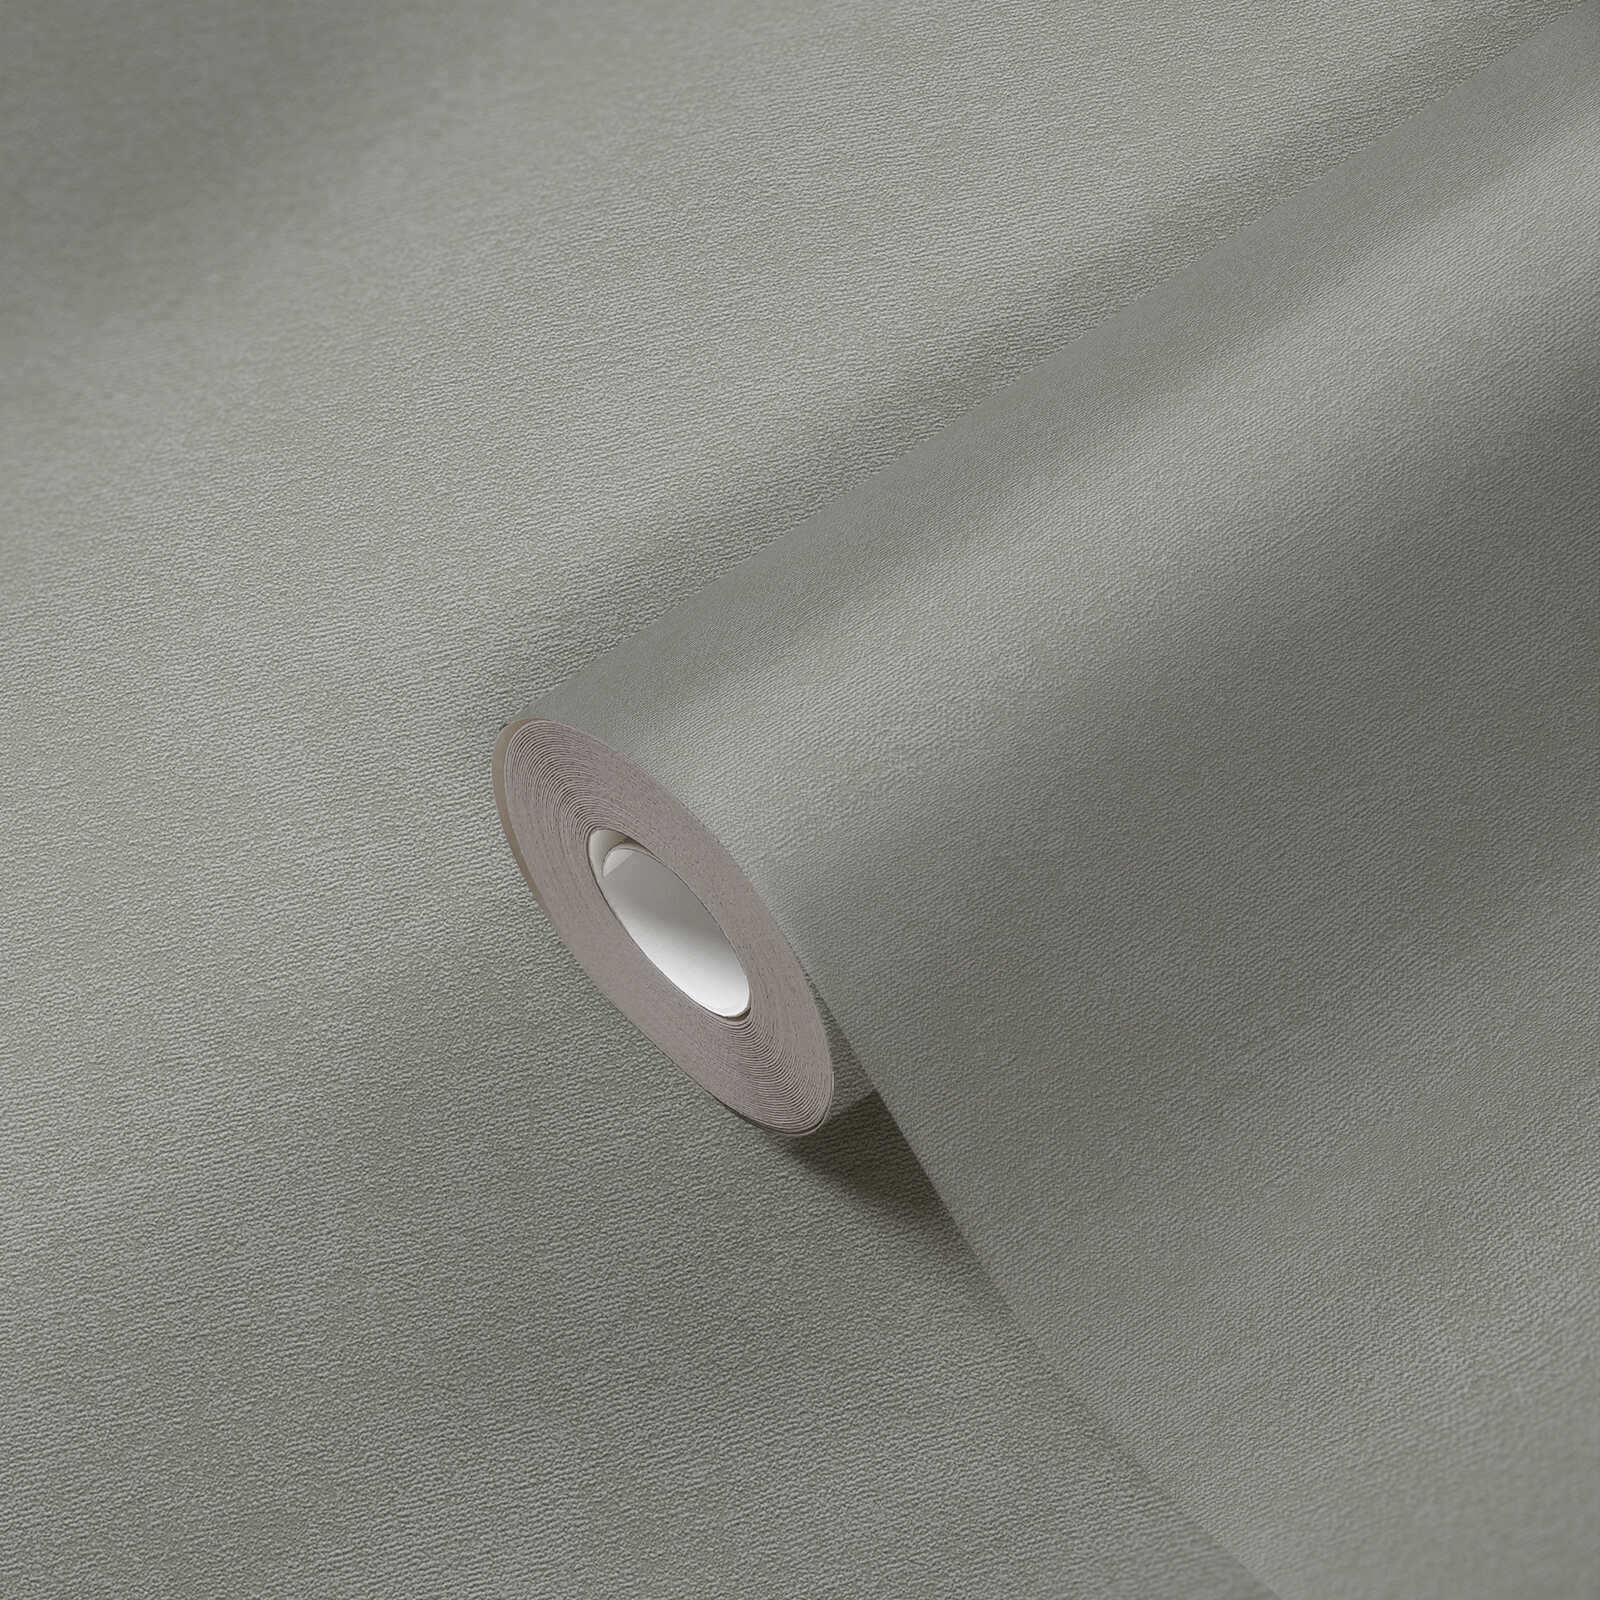             Carta da parati non tessuta con superficie monocolore a trama fine - grigio
        